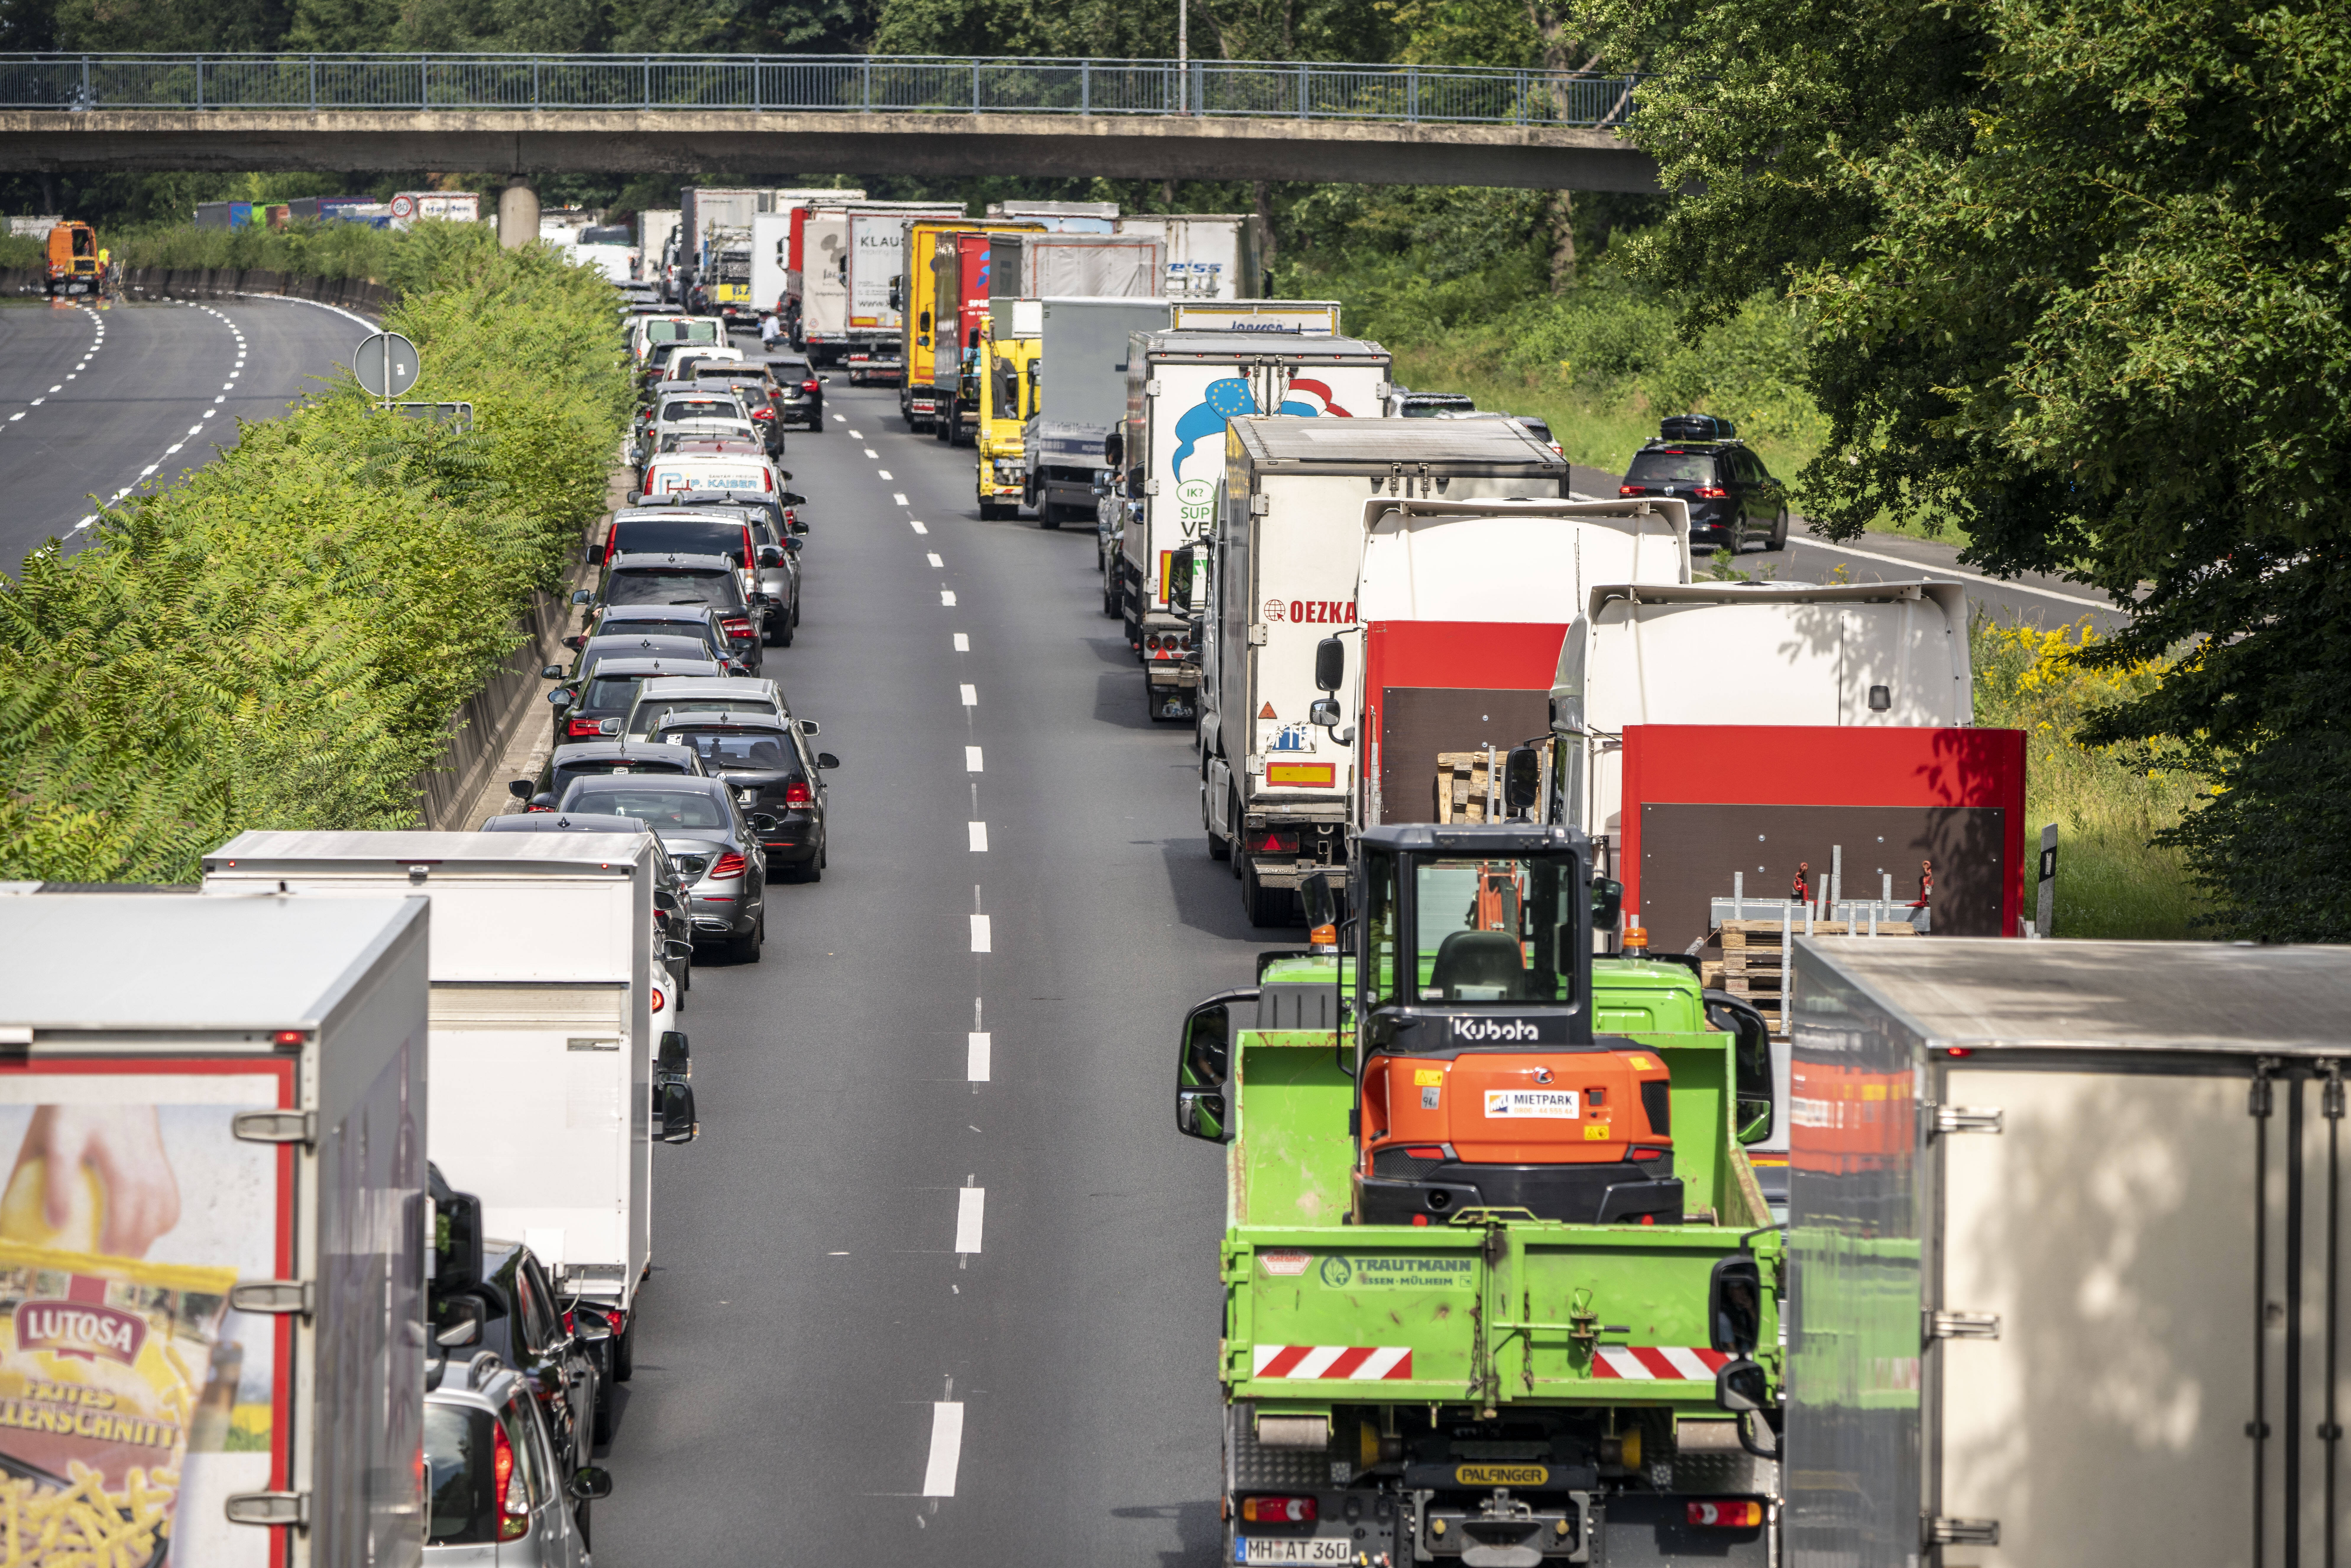 Vollsperrung! Unfallserie auf der Autobahn - Mehrere LKW und PKW beteiligt 